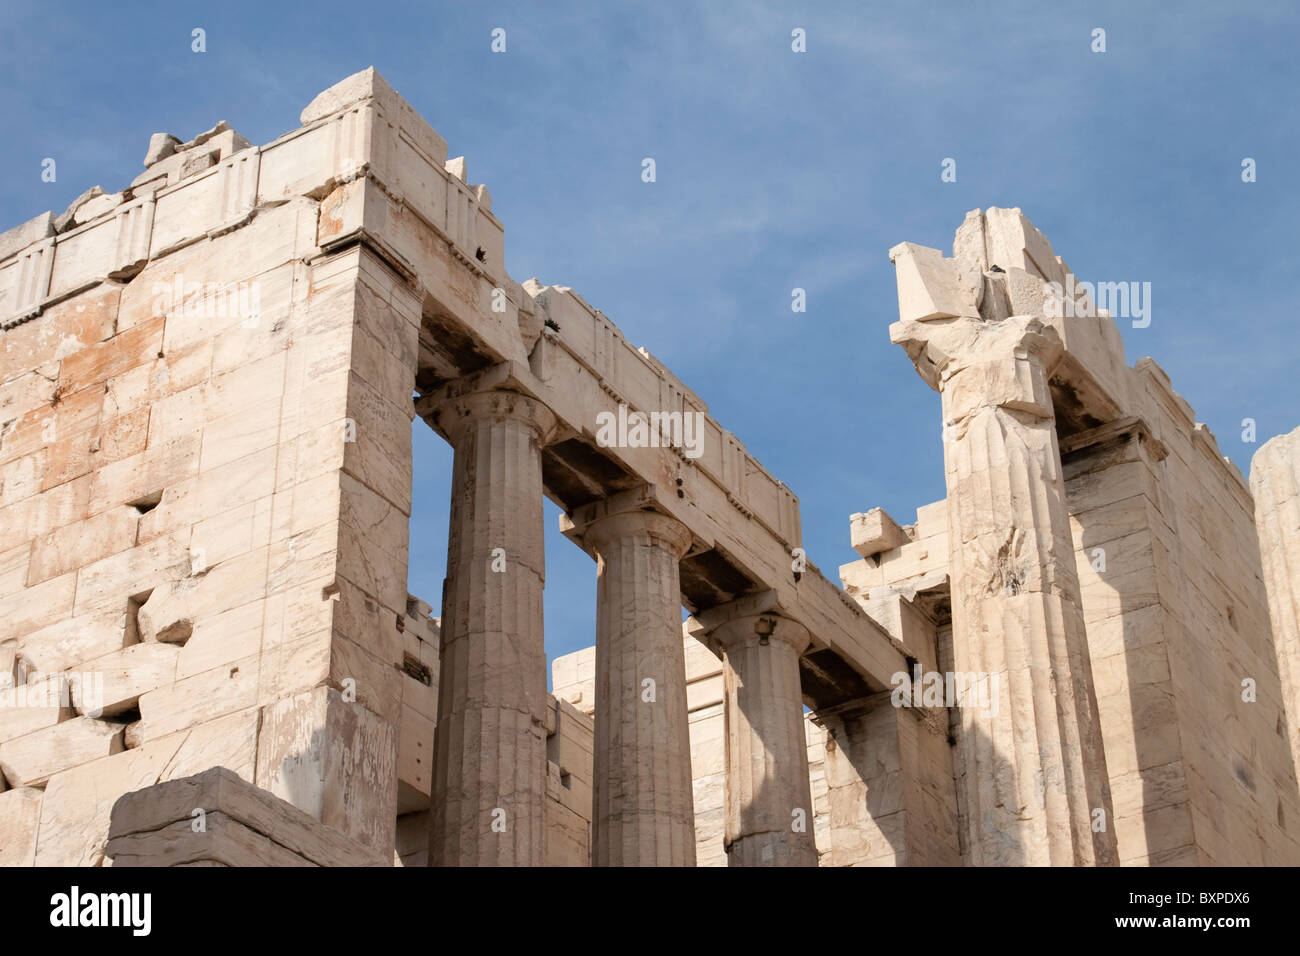 Facade of the Propylaea on the Acropolis, Athens Stock Photo